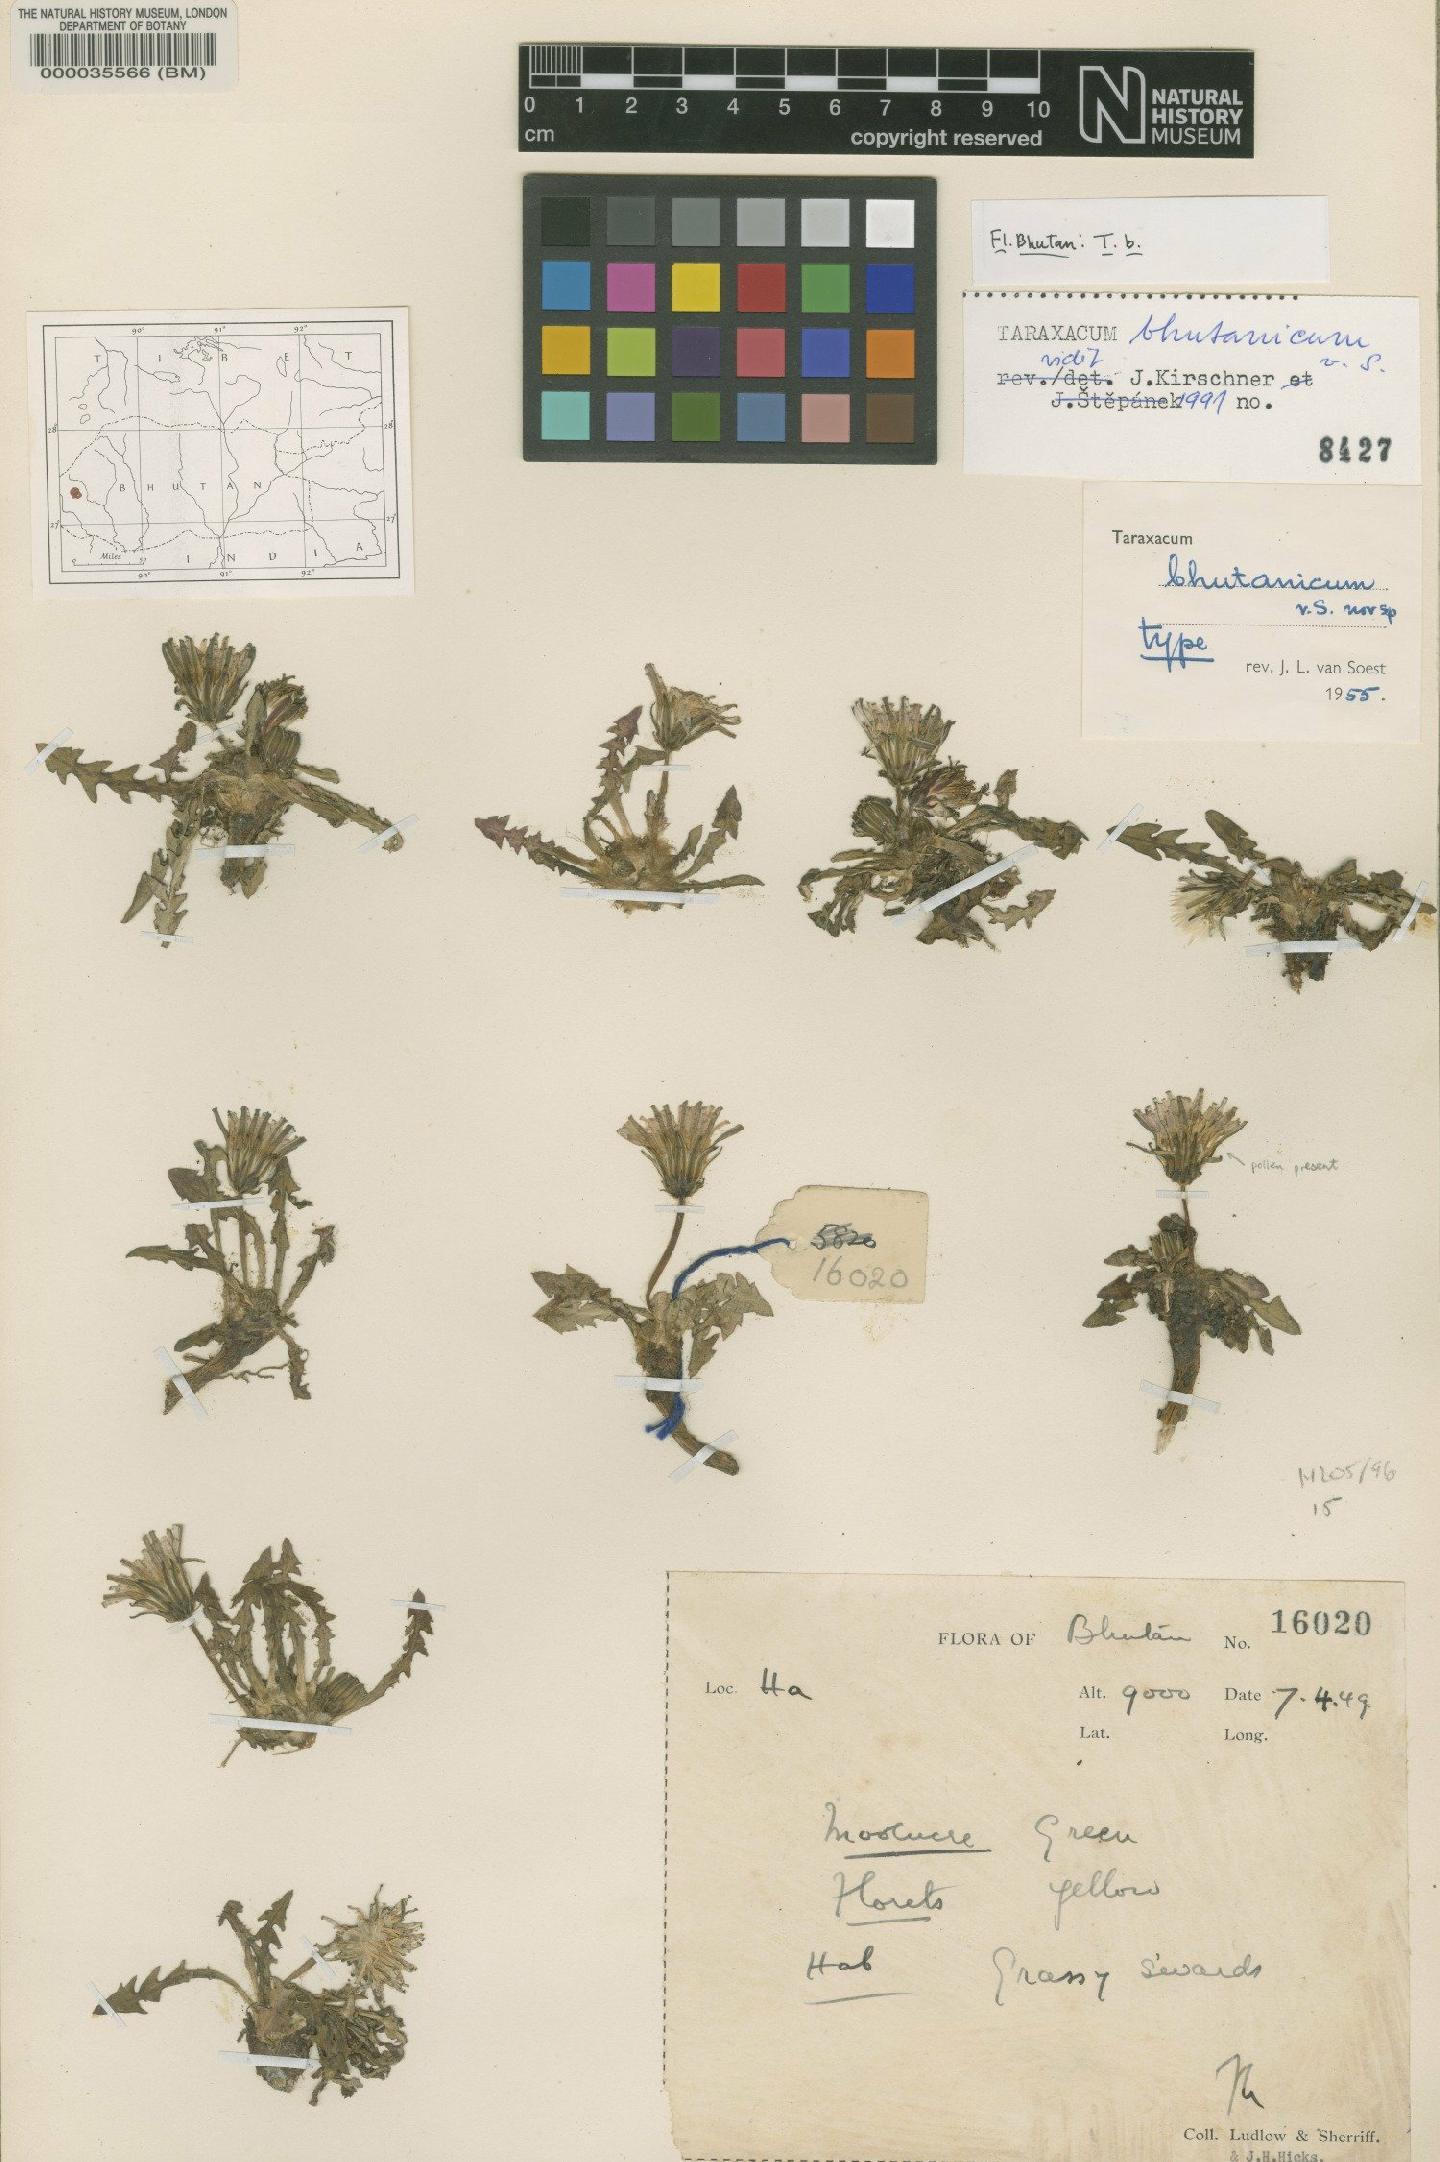 To NHMUK collection (Taraxacum bhutanicum Soest; Type; NHMUK:ecatalogue:481693)